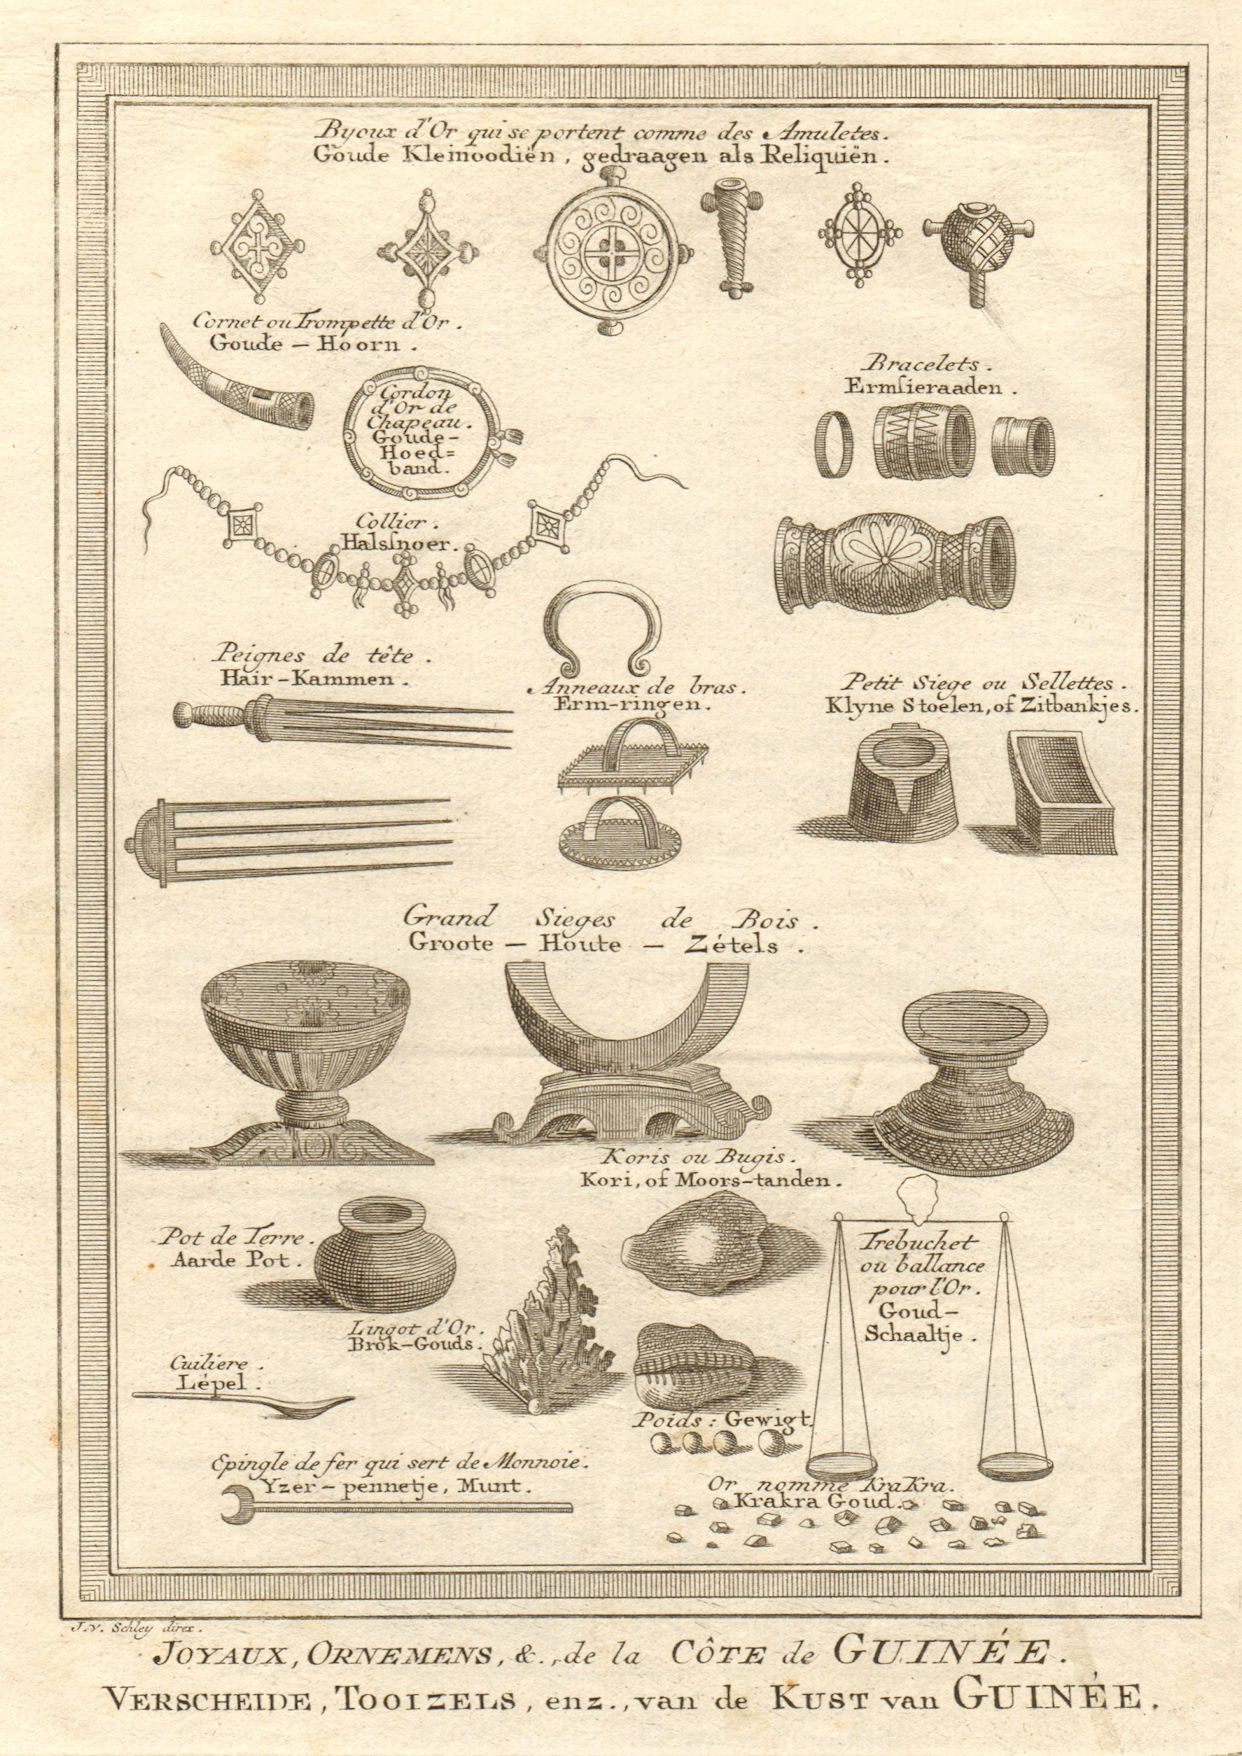 Associate Product 'Joyaux, ornemens de la côte de Guinée' West Africa jewels ornaments SCHLEY 1748